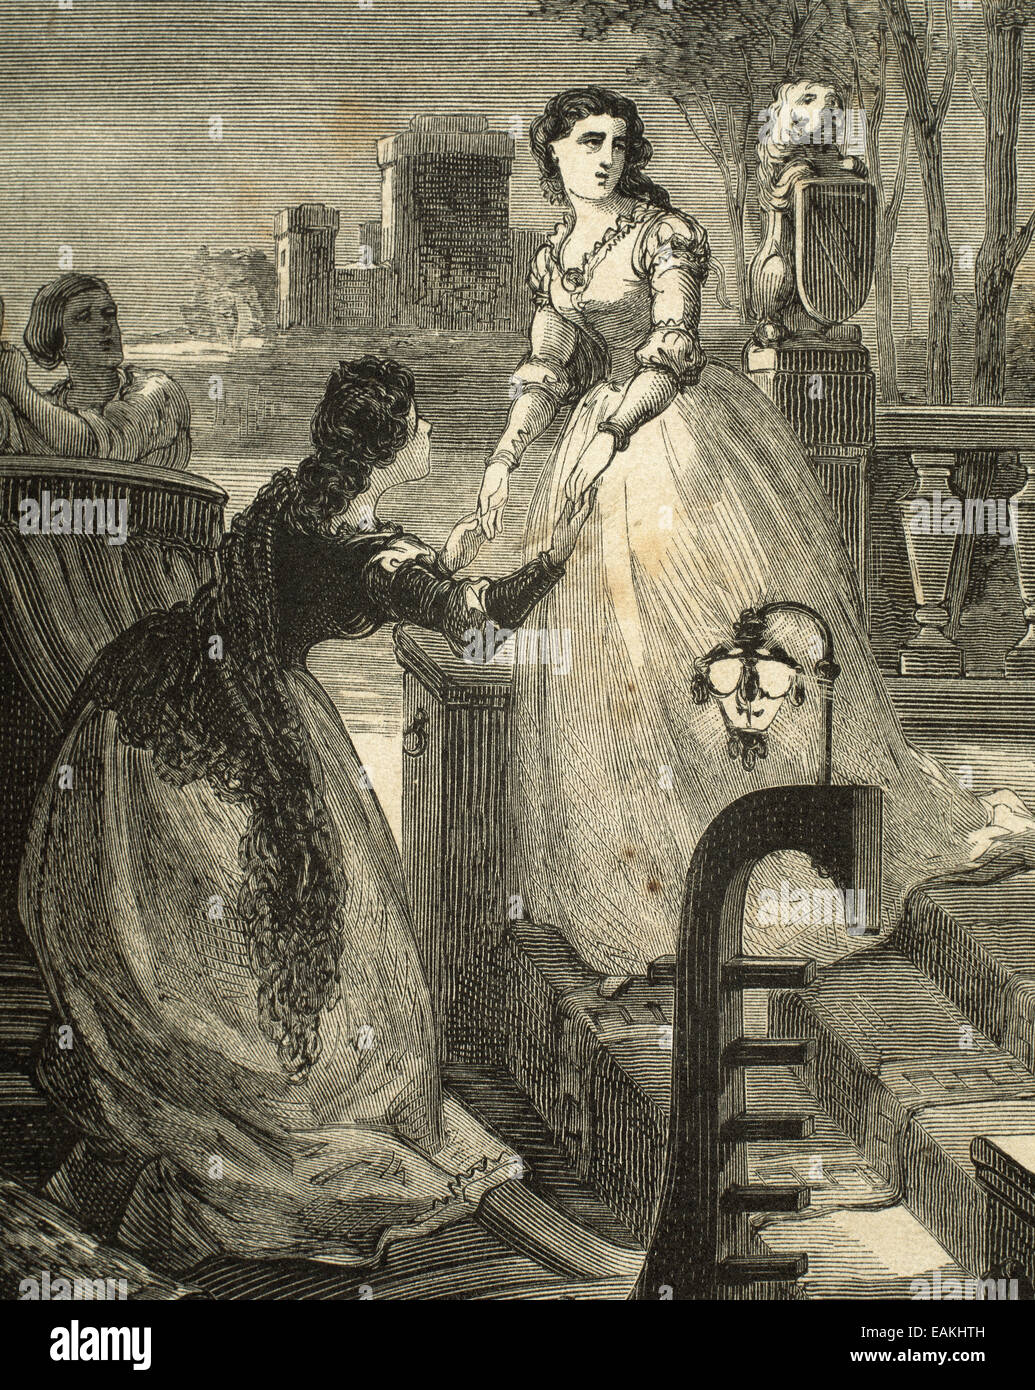 William Shakespeare (1564-1616). Englischer Schriftsteller. Romeo und Julia. Abenteuer einer Nacht. Kupferstich von Gomez, 1868. Stockfoto